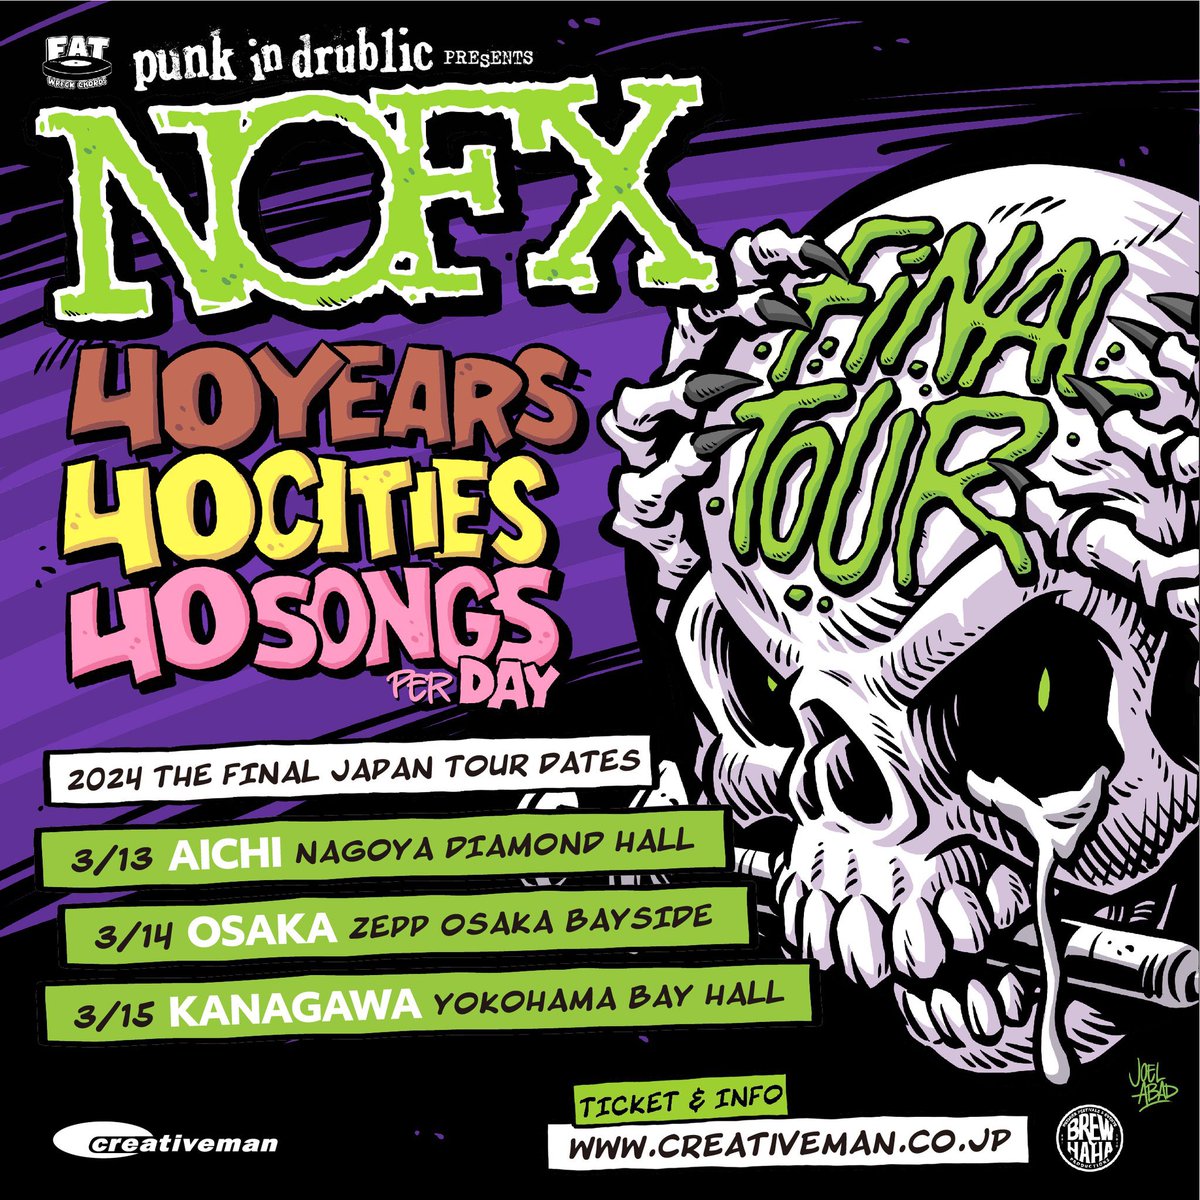 3月の中旬はコロナになると思う。
#NOFX #punkindrublic